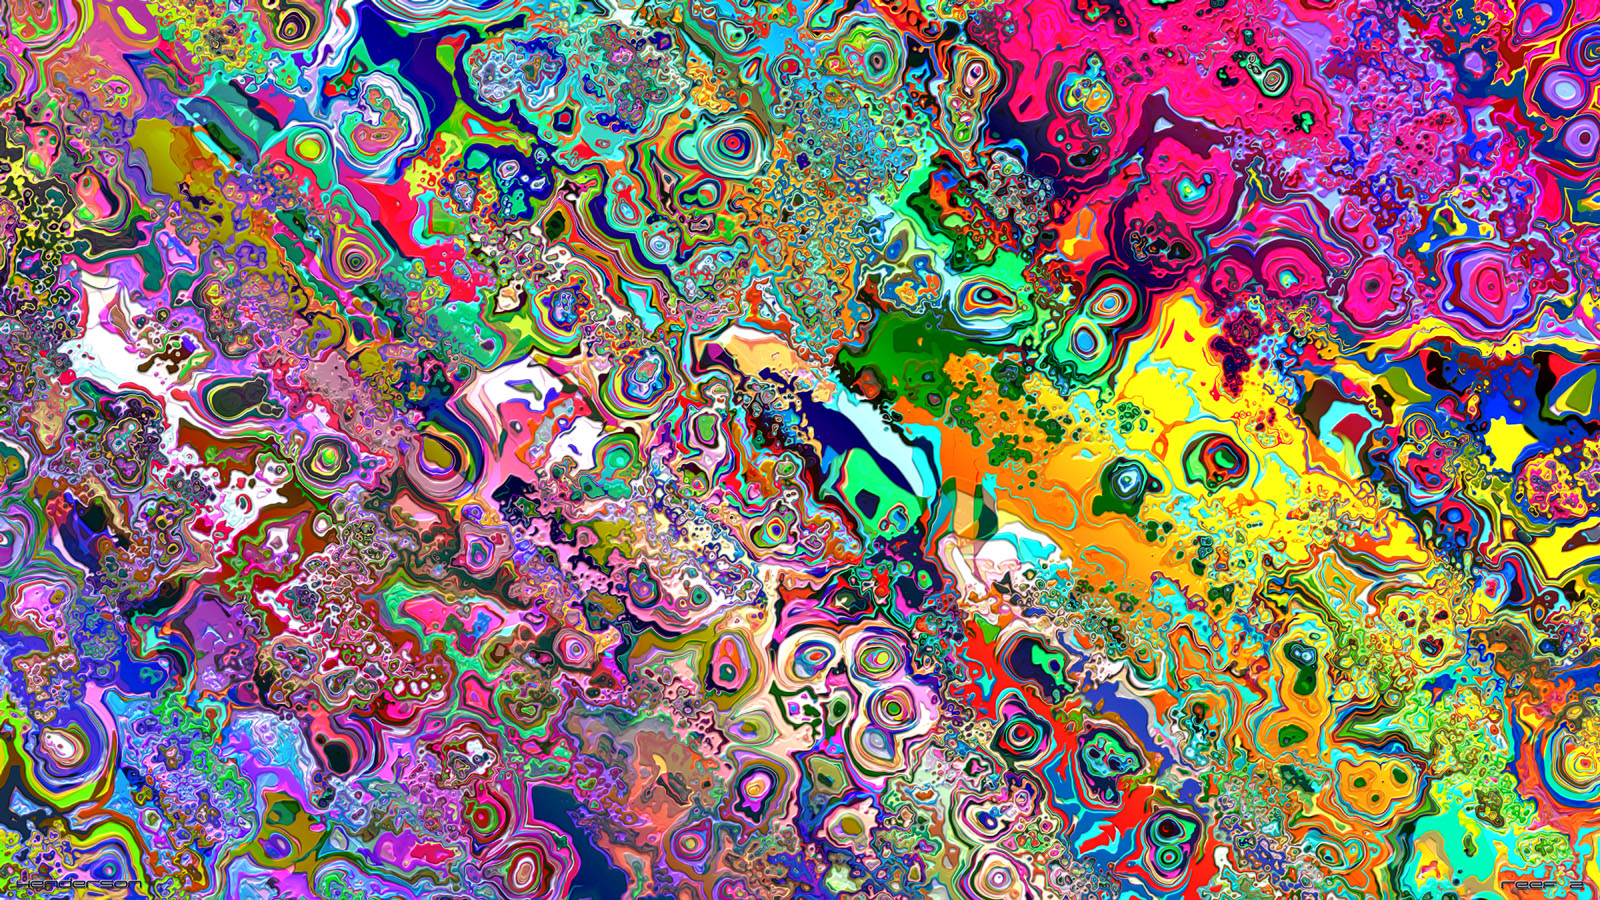 http://2.bp.blogspot.com/-tDPmRzlMgcQ/T5bQ4f_KhVI/AAAAAAAAAM4/F7cESMQ8yu4/s1600/18683_1_miscellaneous_digital_art_trippy_colorful_trippy_colorful.jpg